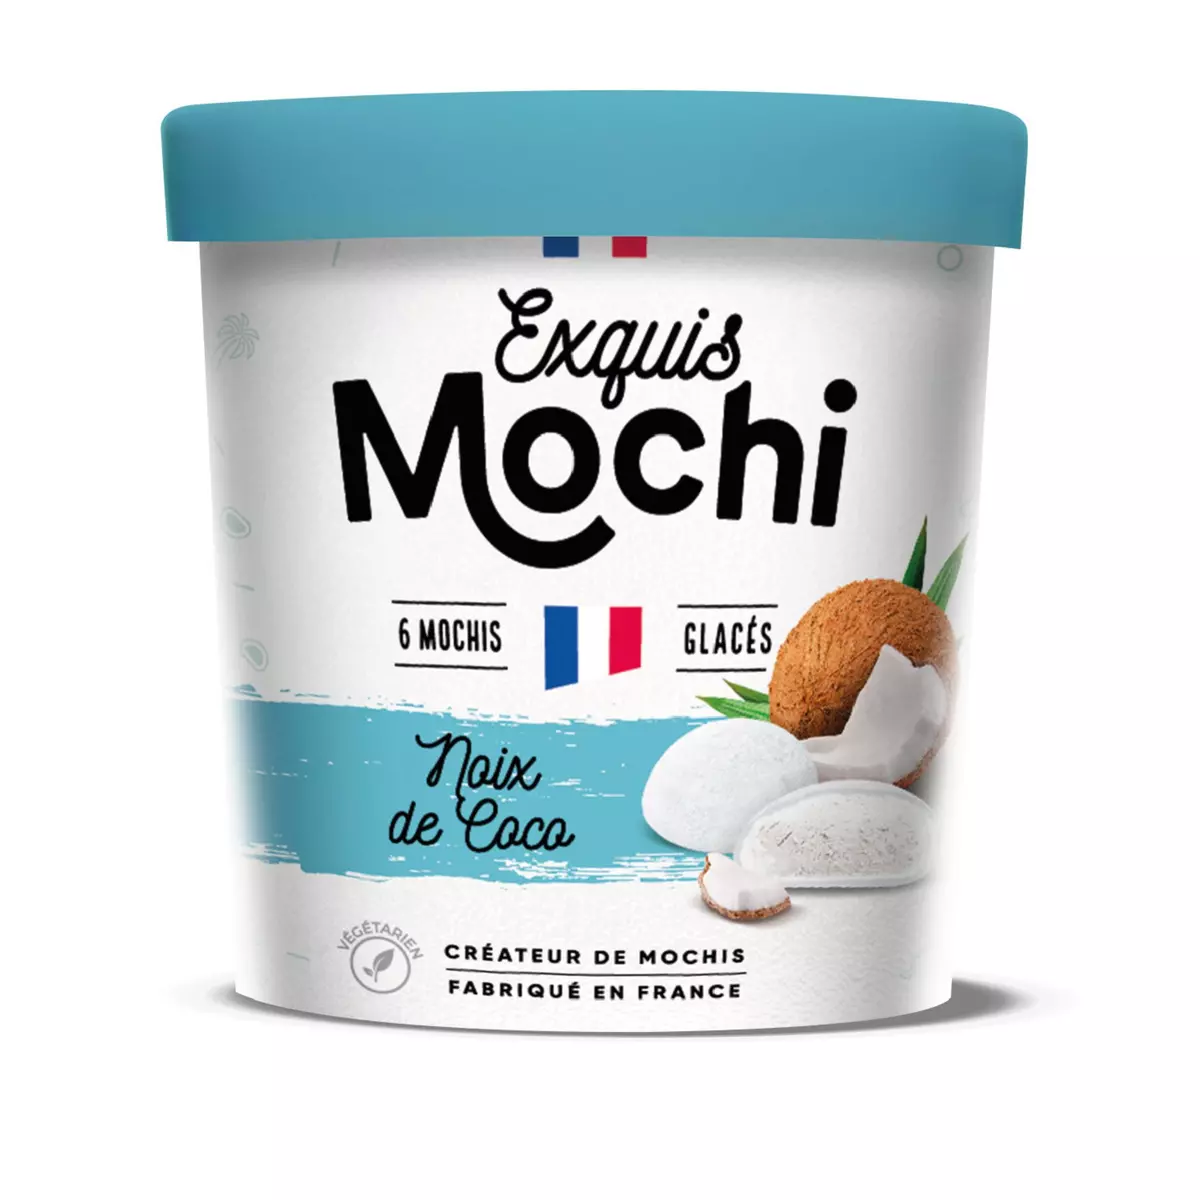 EXQUIS MOCHI Mochis glacés noix de coco 6 pièces 180g